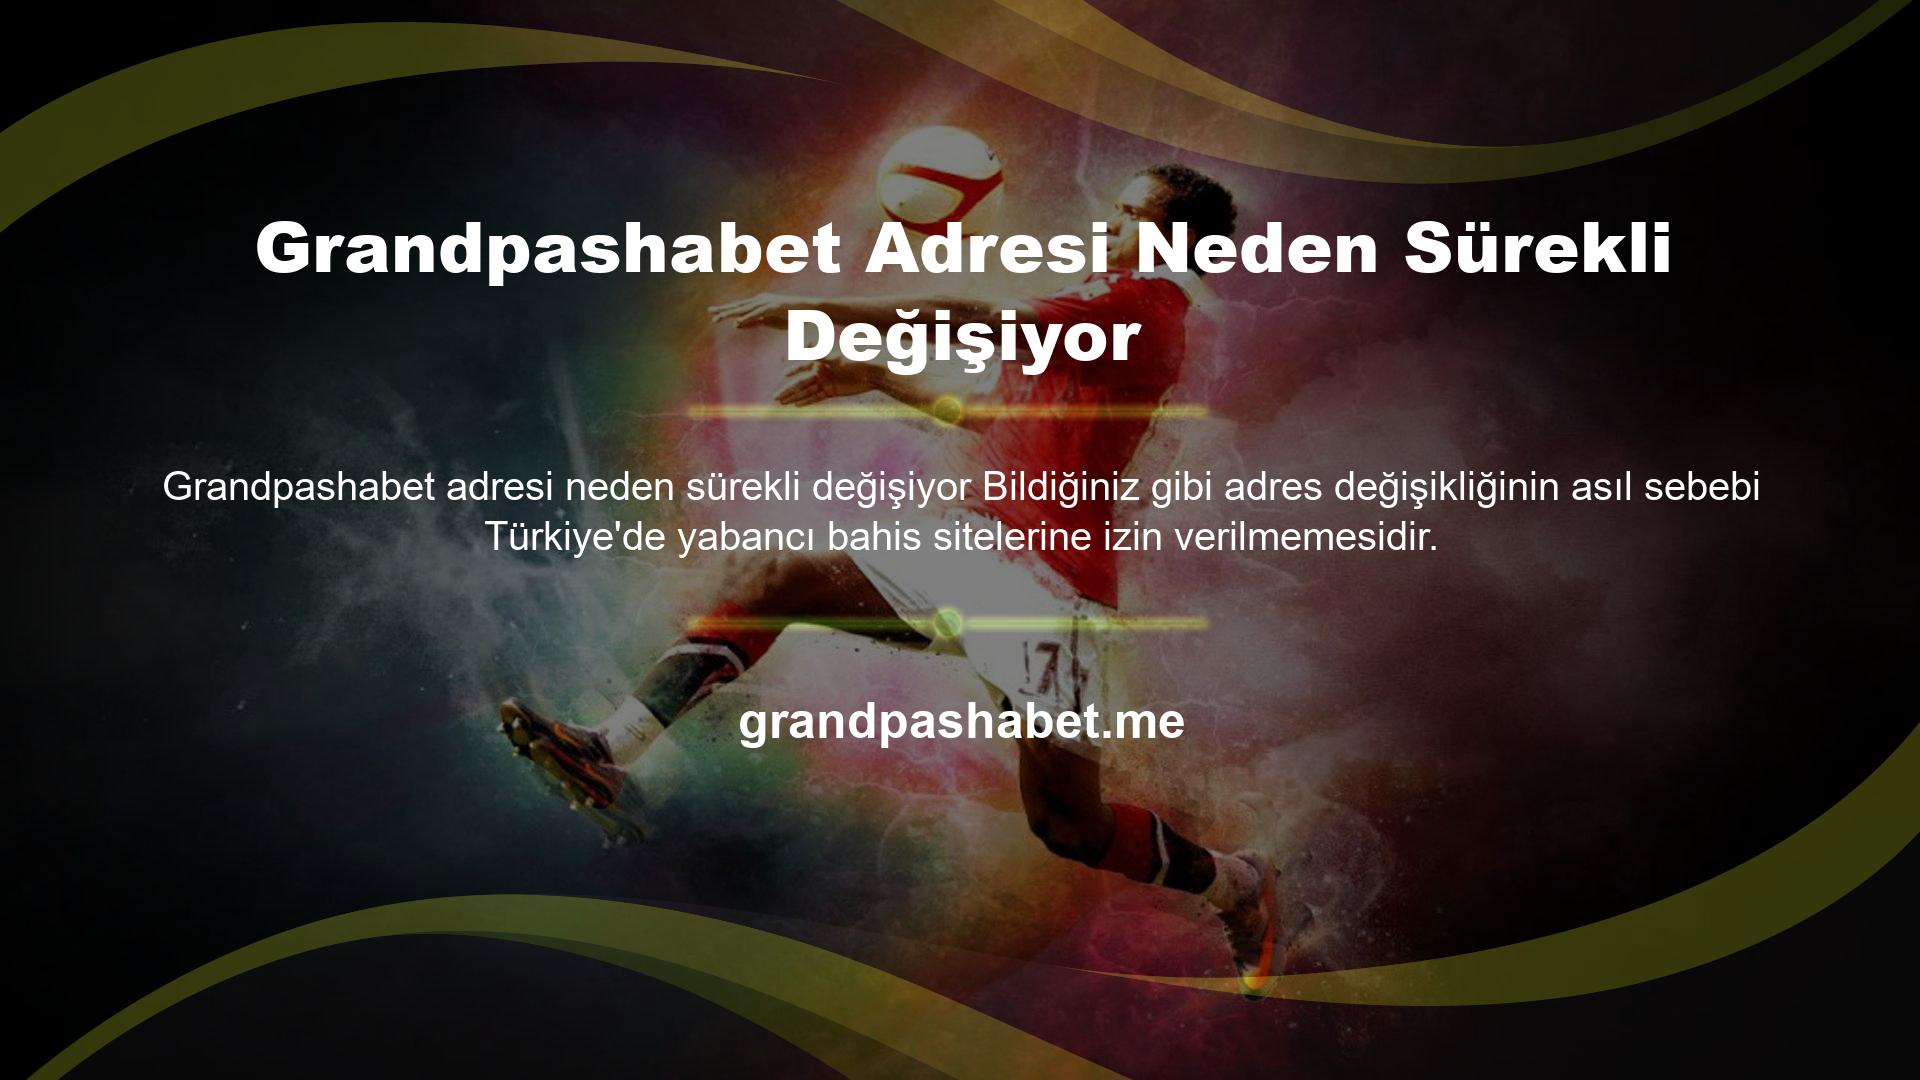 Grandpashabet ayrıca Türkiye'de yasa dışı veya yabancı veya offshore kumar sitesi olarak kullanılmaktadır